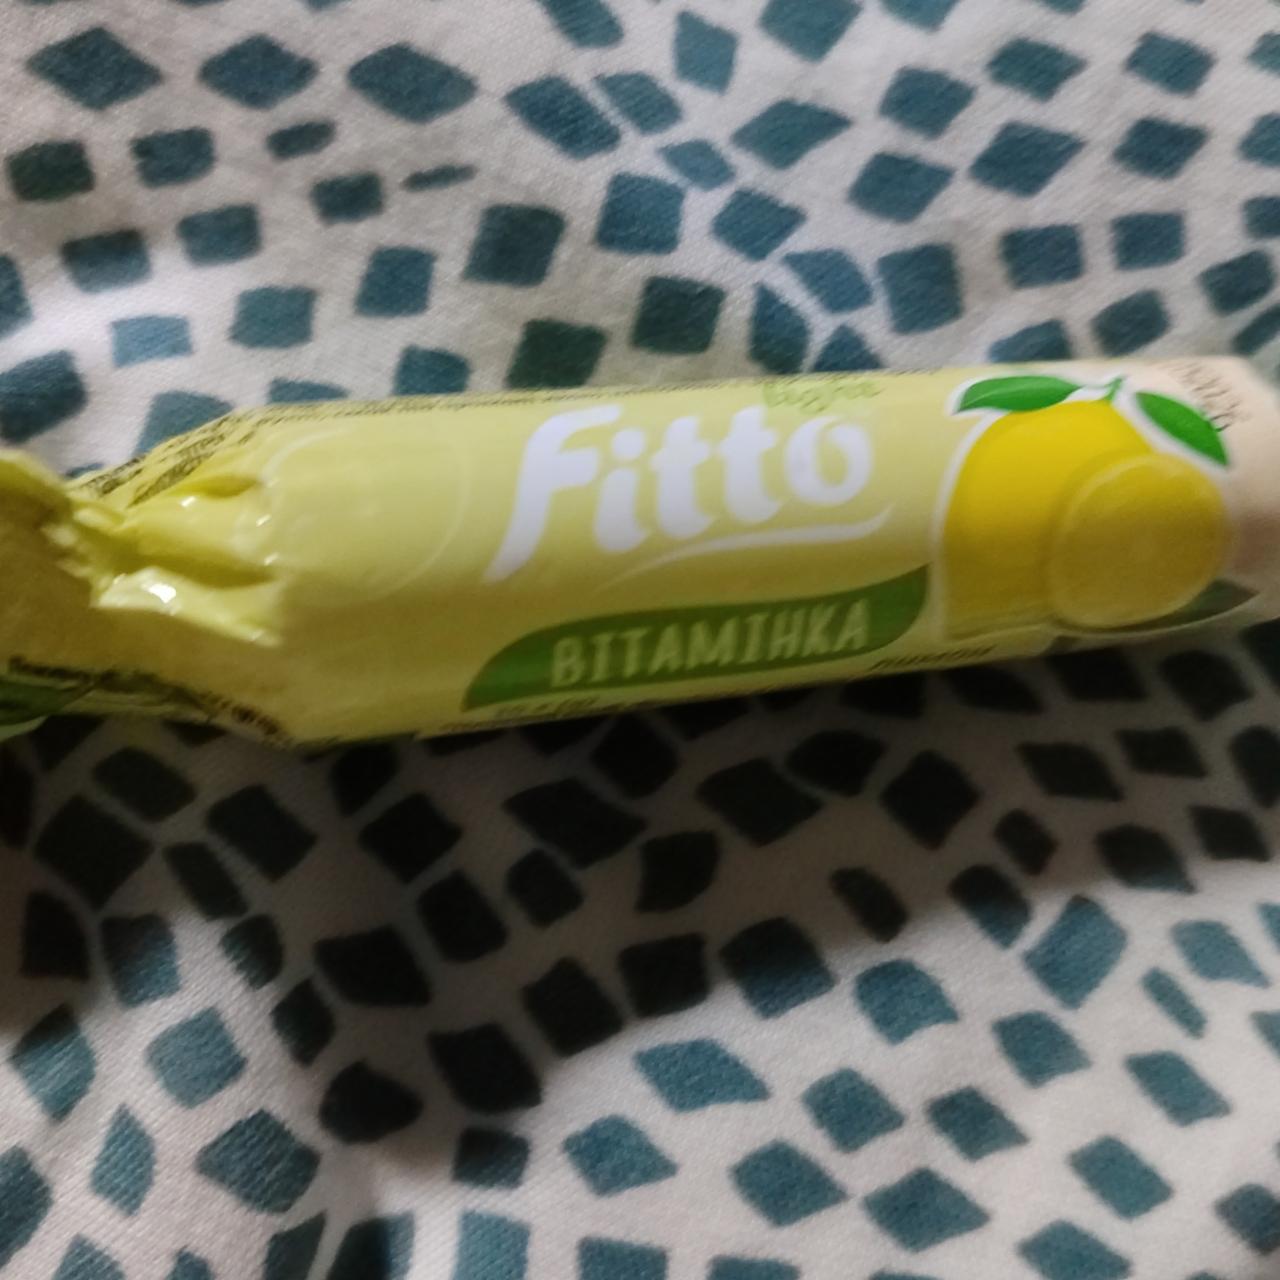 Фото - Витаминка со вкусом лимона Fitto